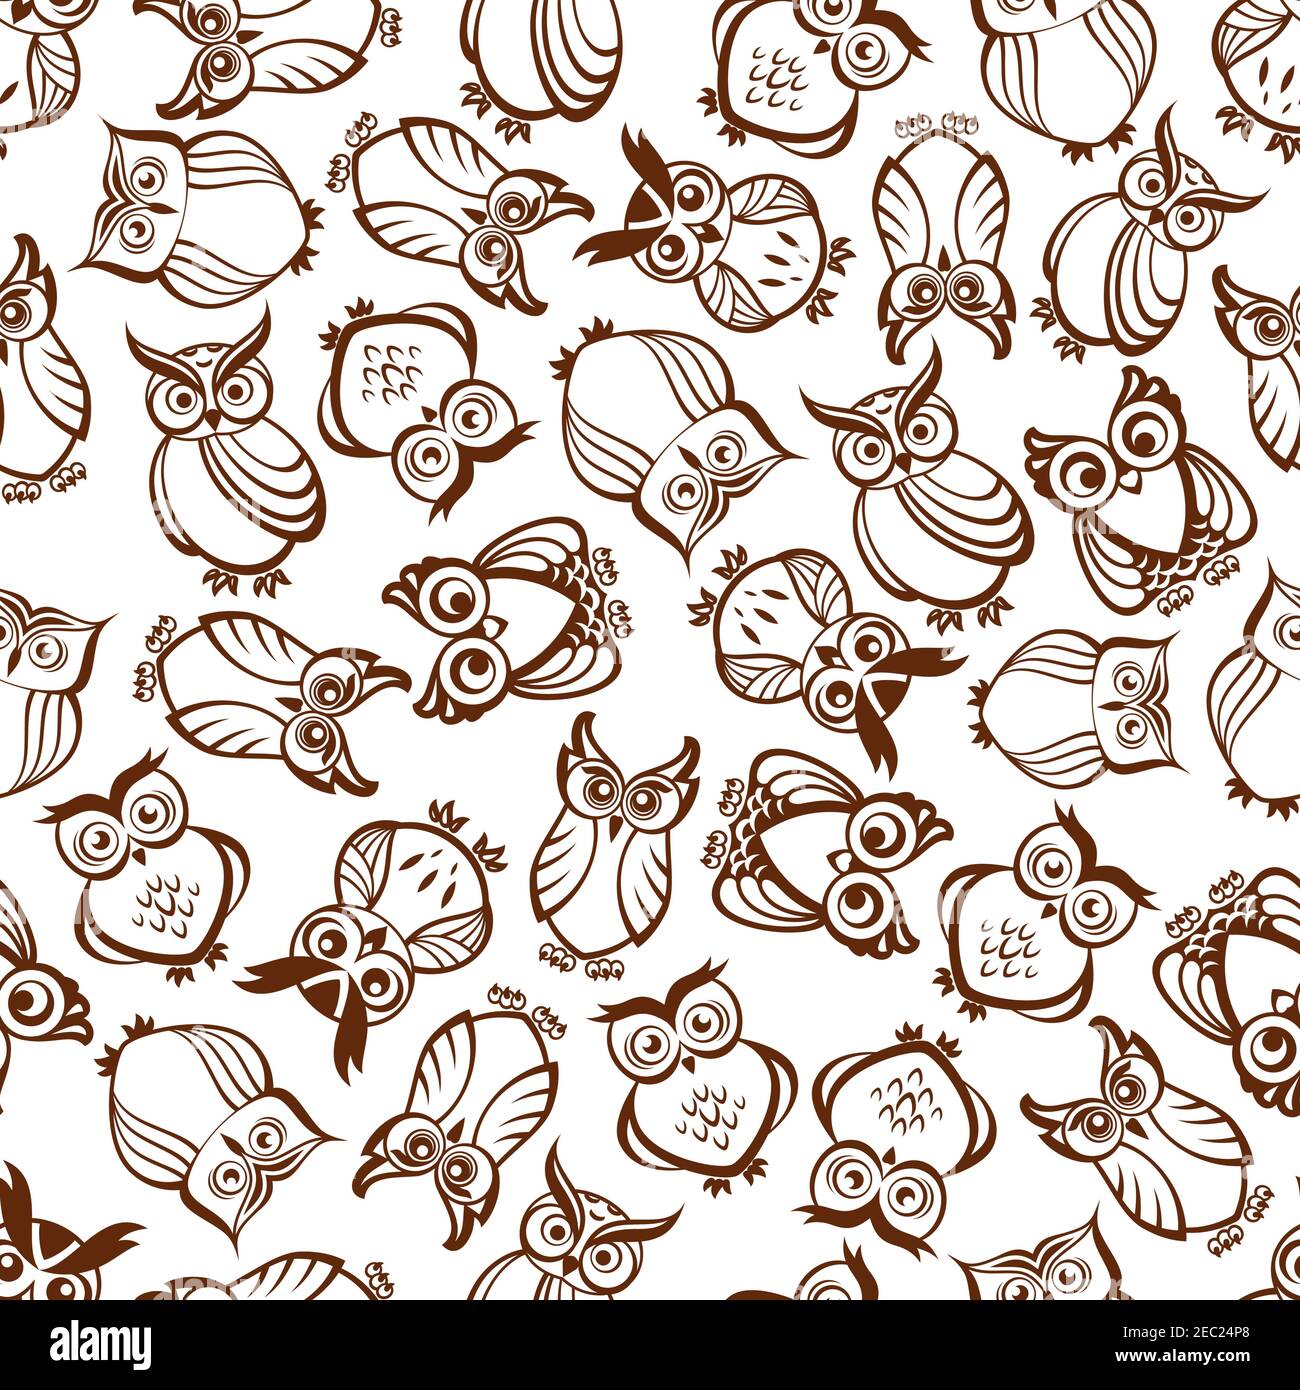 Niedliche braune Eulen nahtloses Muster mit Umriss Silhouetten von lustigen Waldvögeln mit ornamentalen Federschmuck und staunenden Blick. Als Naturhintergrund verwenden, Stock Vektor